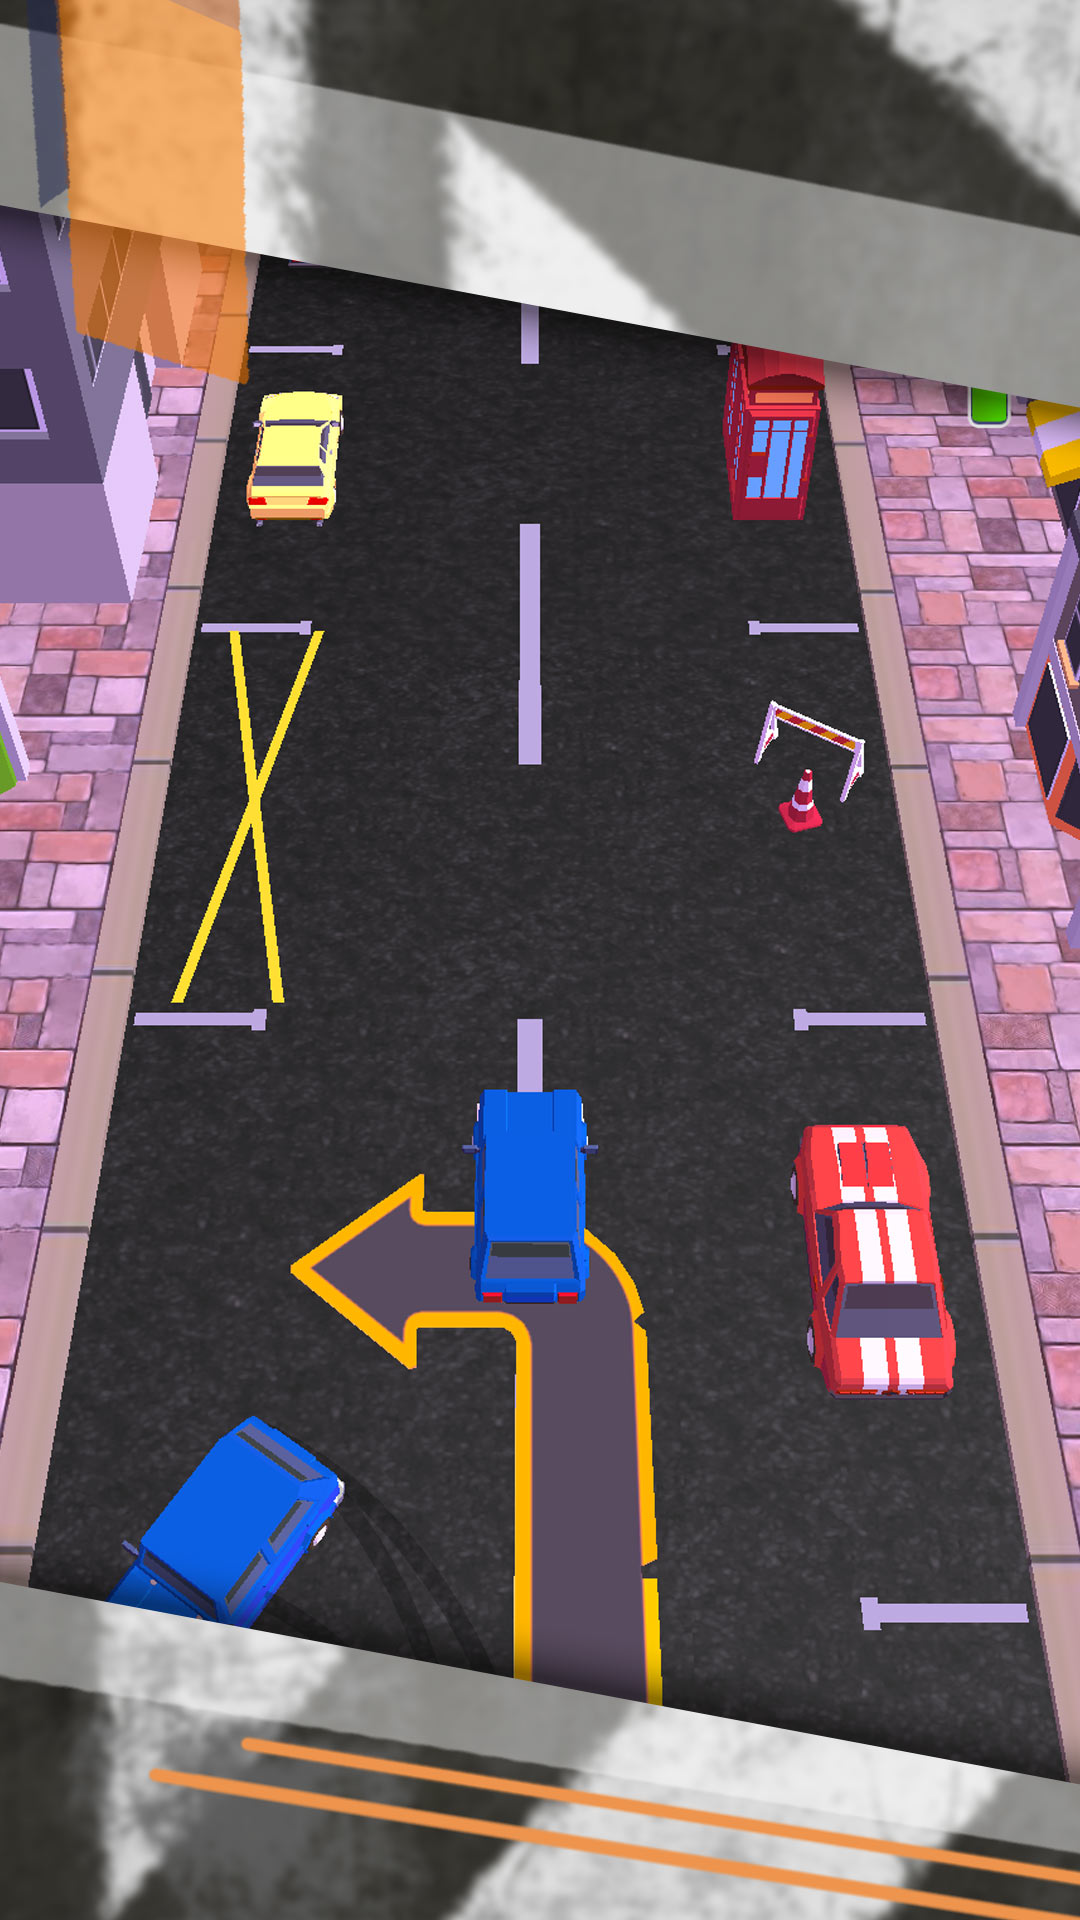 驾校停车模拟器游戏 v1.0.1 安卓版 2